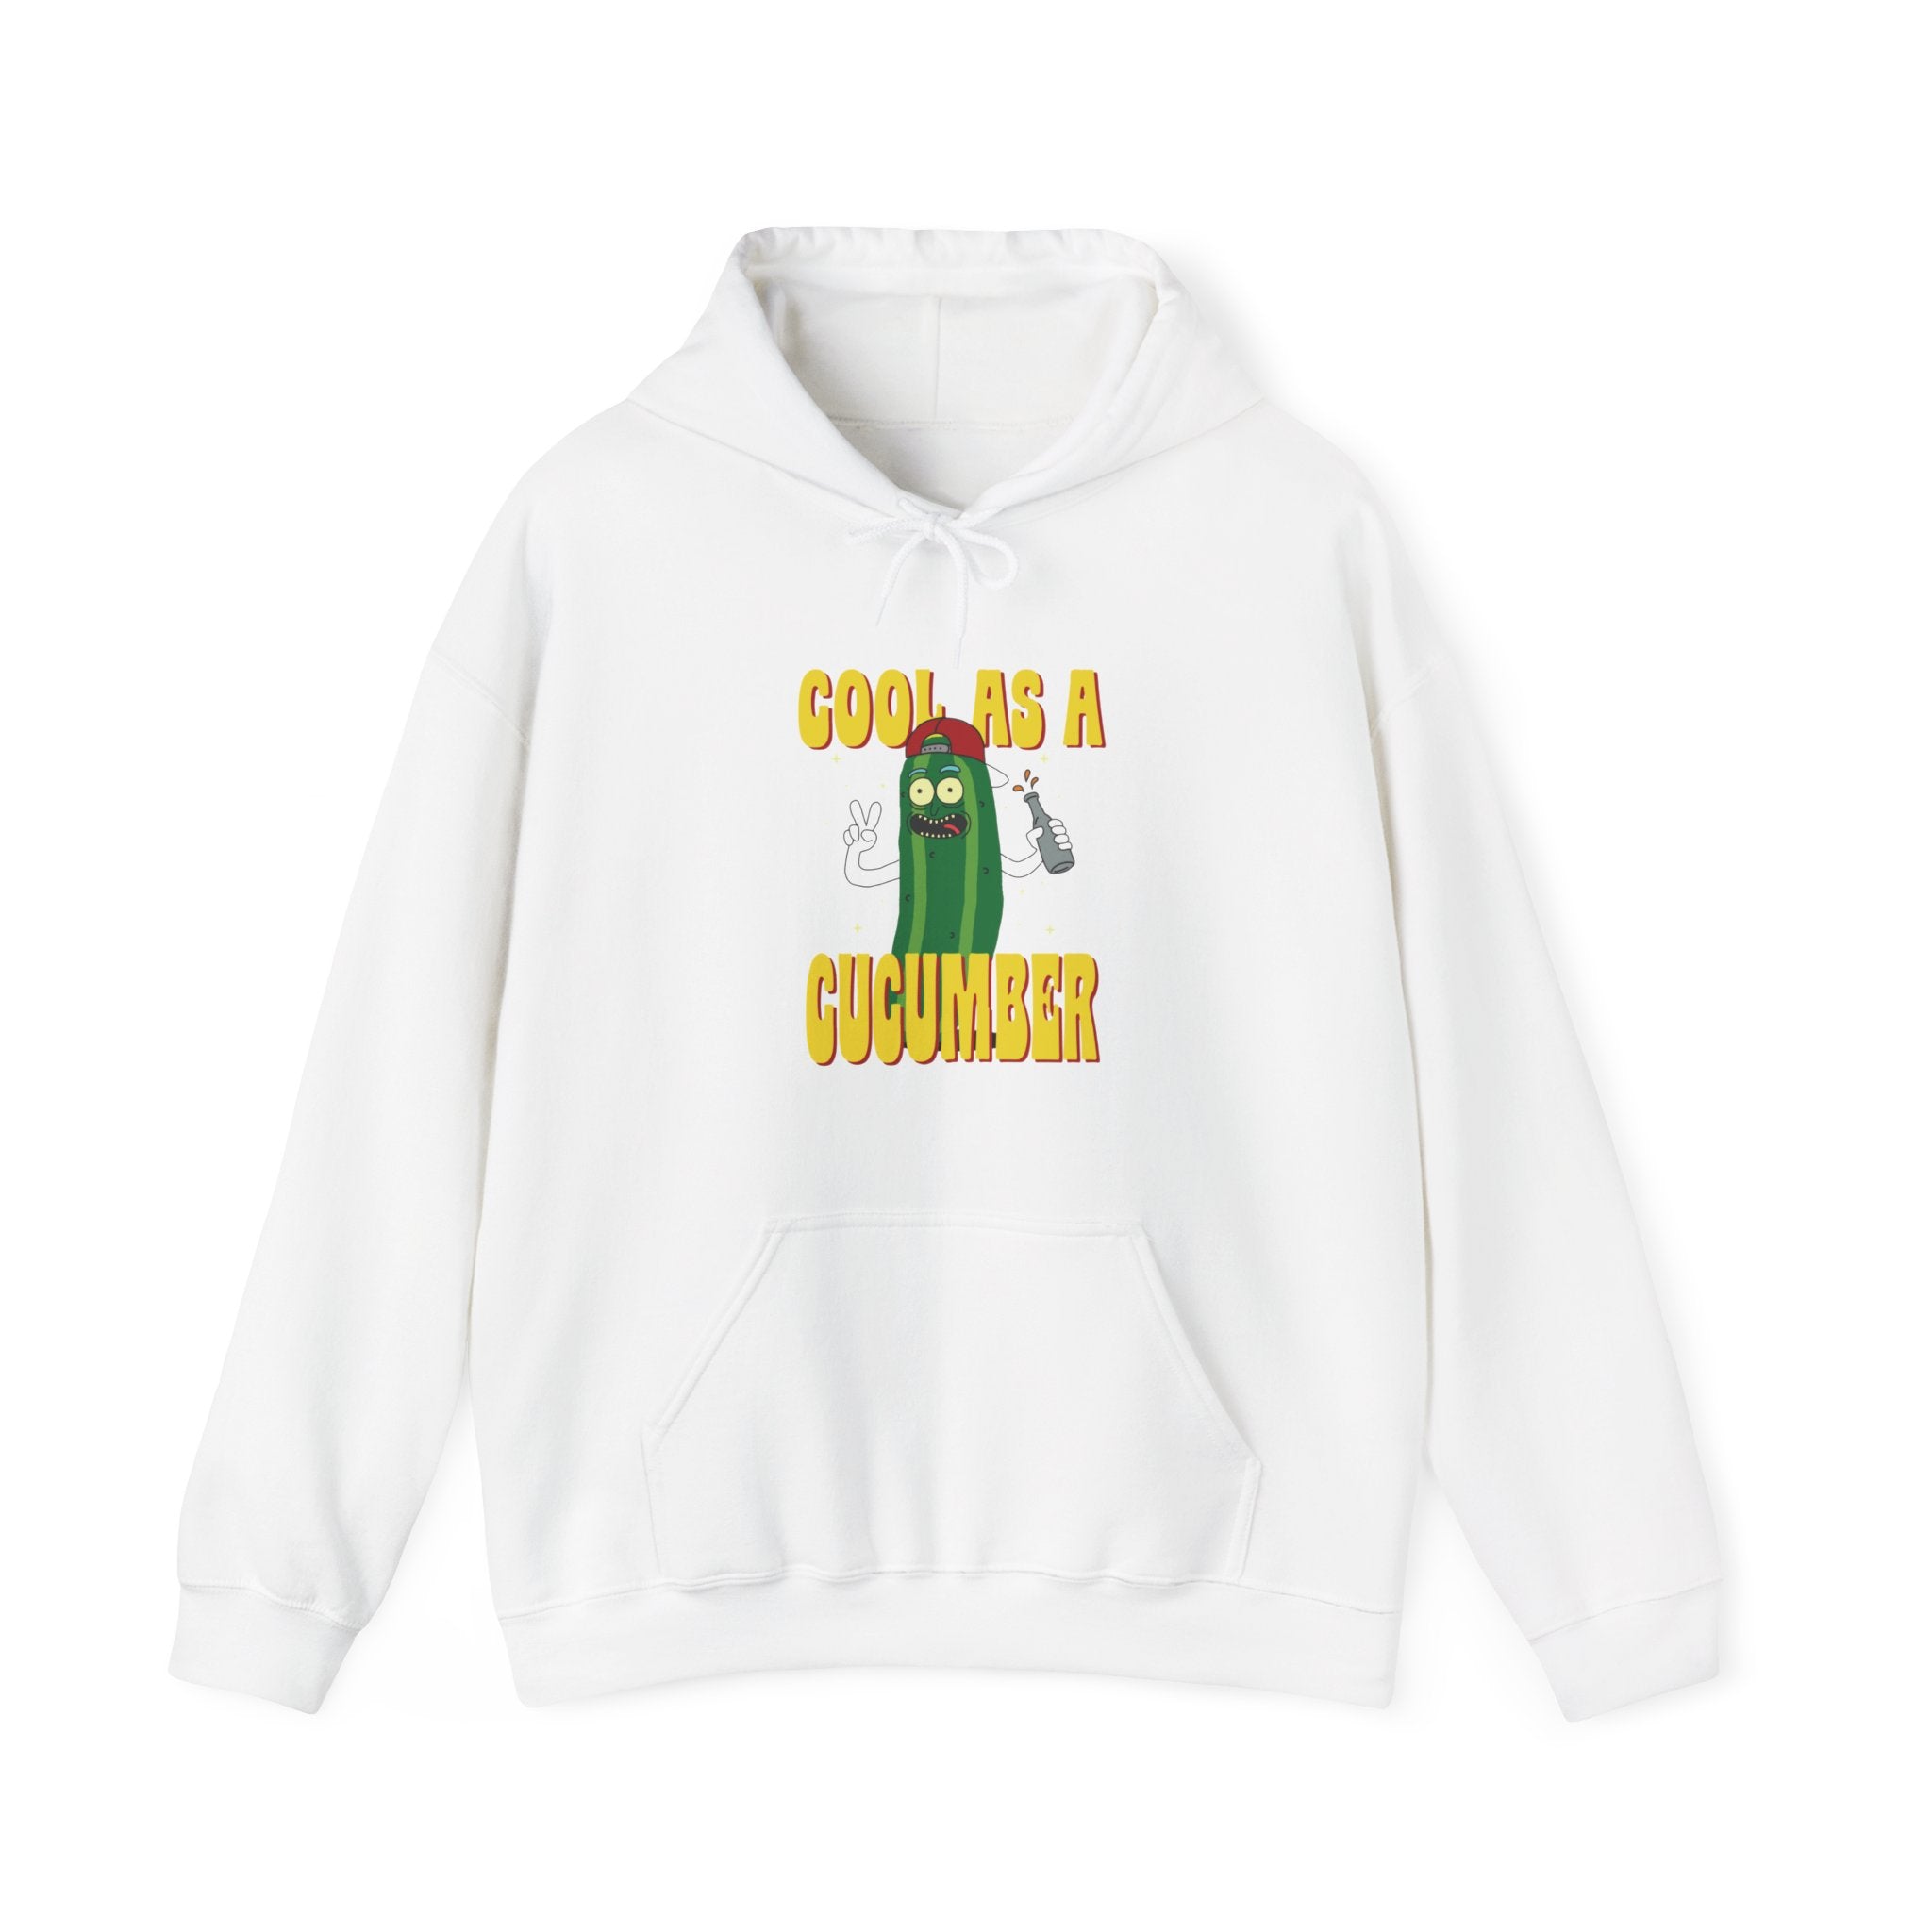 Cool as Cucumber - Hooded Sweatshirt